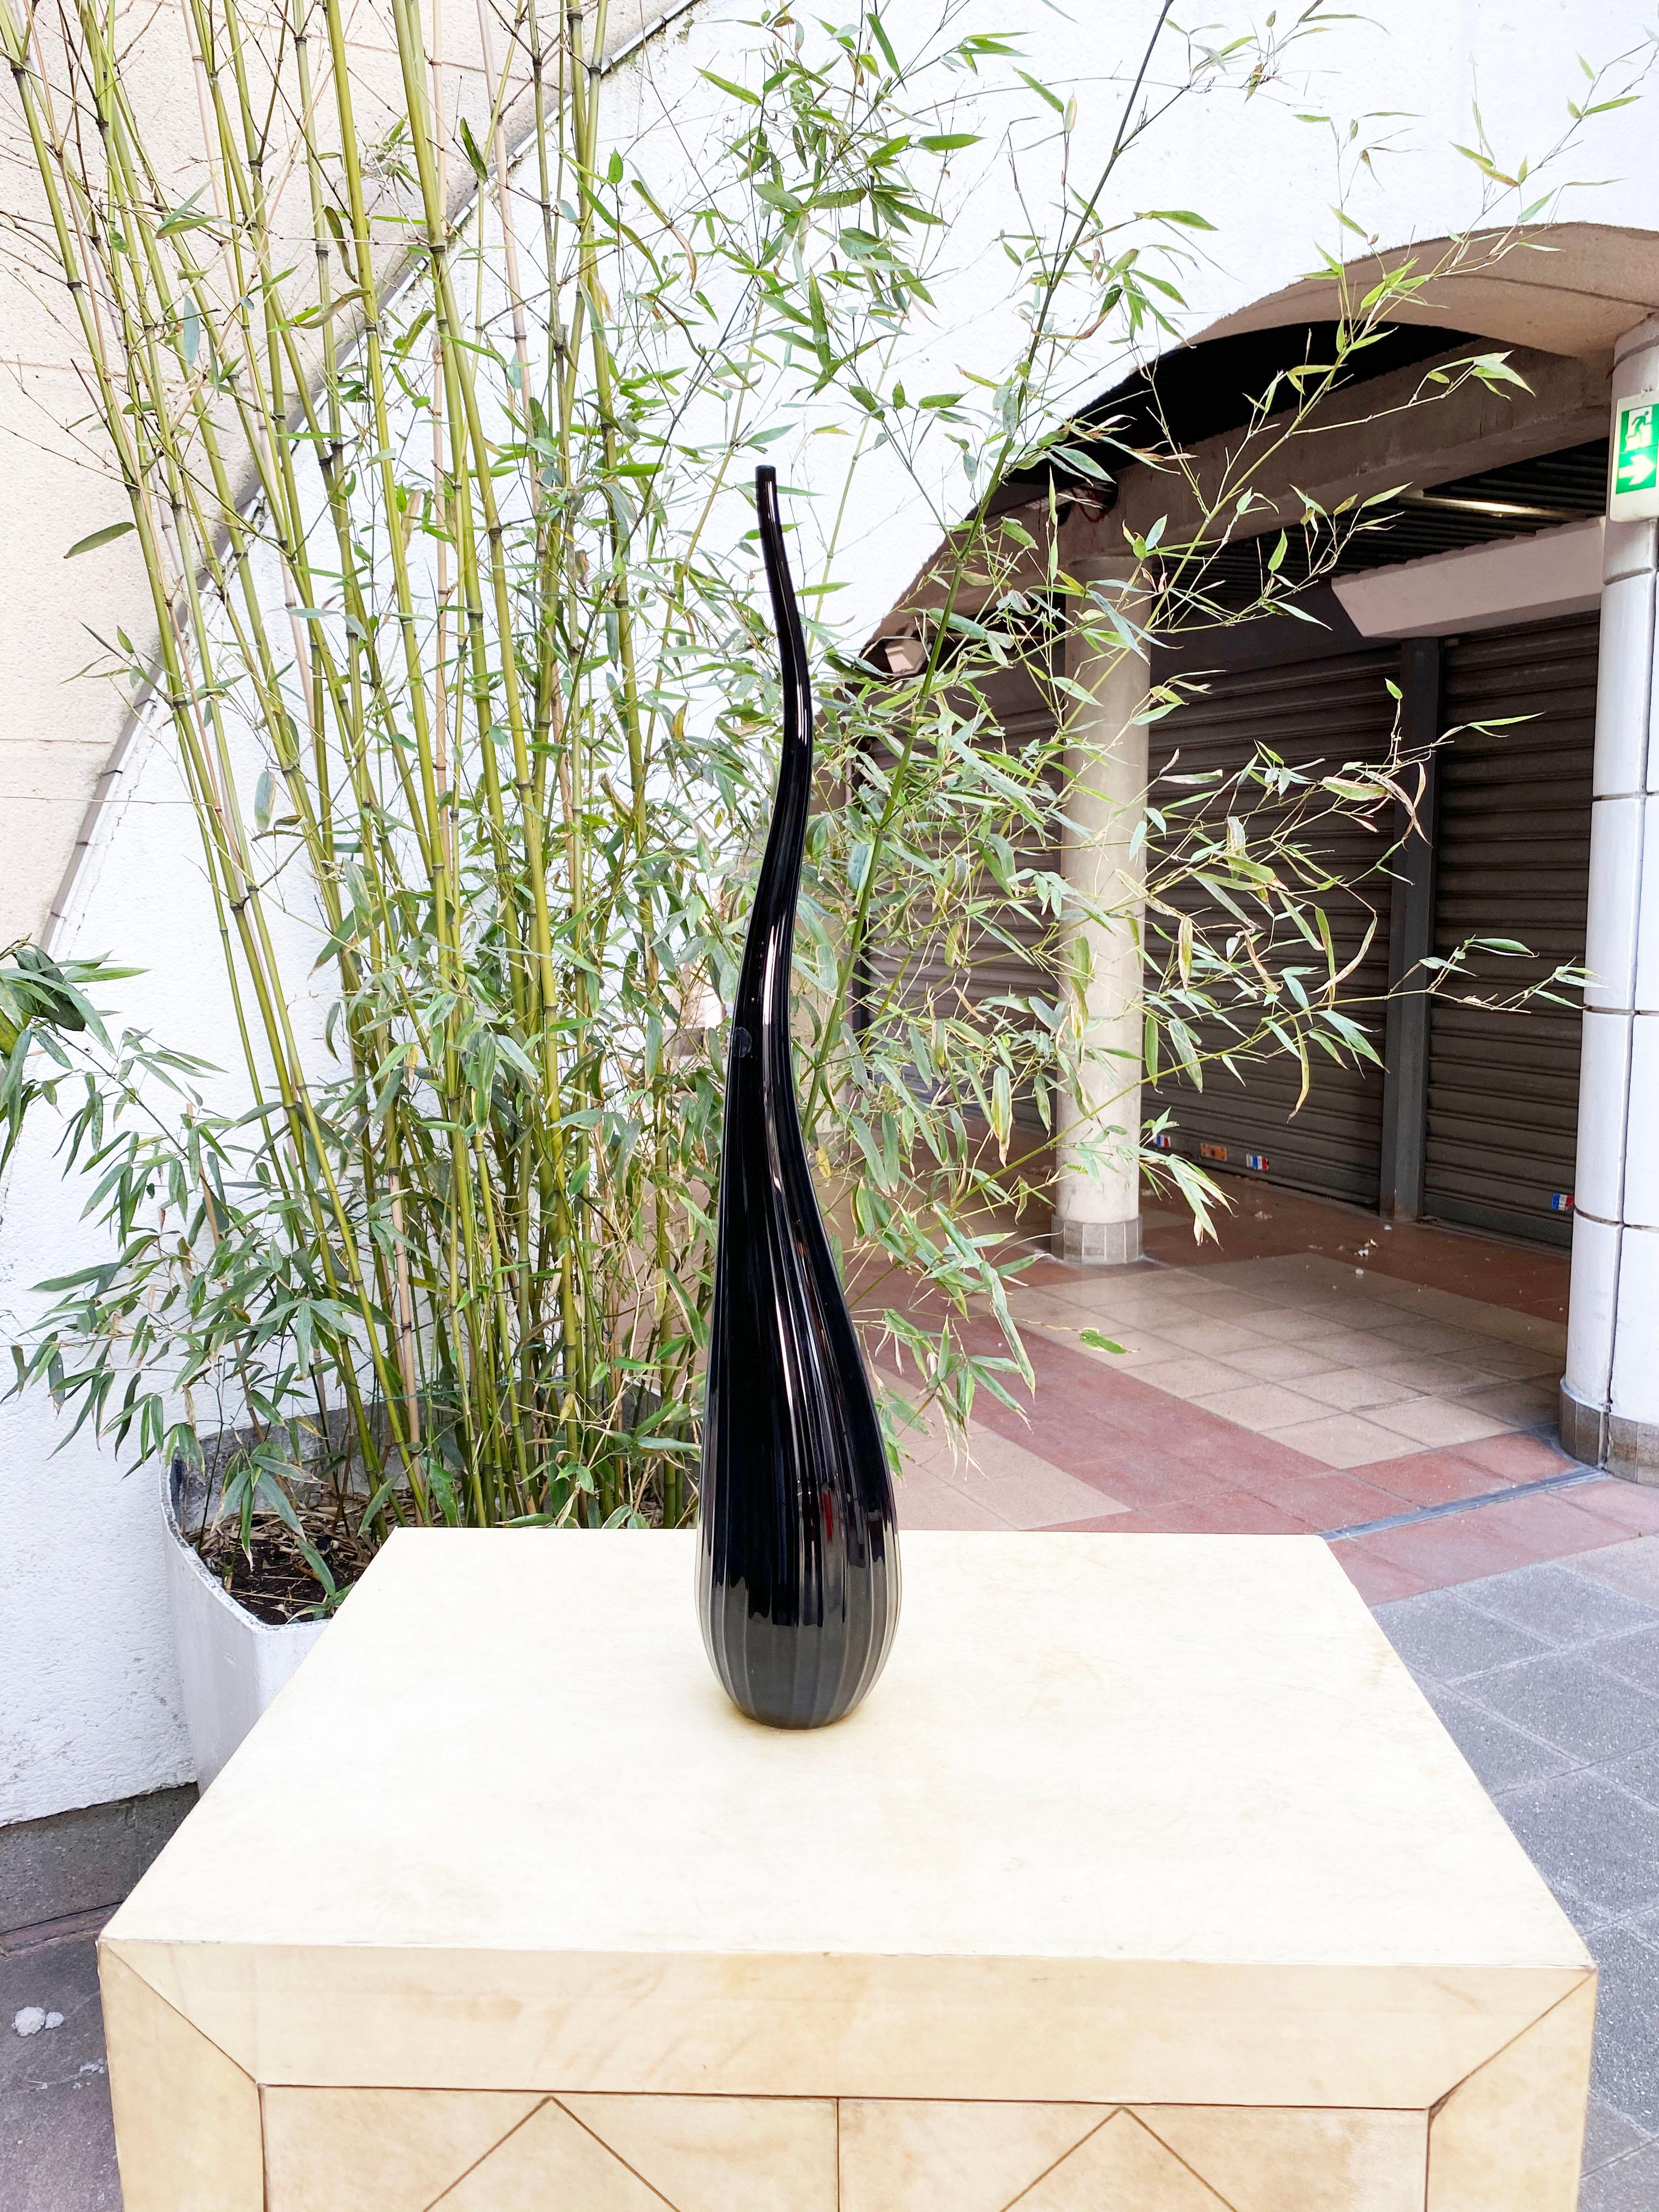 Salviati Murano
von Renzo Stellon
Modell Aria
1 Soliflores-Vase Modell Aria
aus schwarzem Muranoglas
piriforme Form mit langem, turbulentem Hals, der mit feinen Rippen verziert ist
unterzeichnet und datiert 2009
1 von 55 cm hoch
neu auf